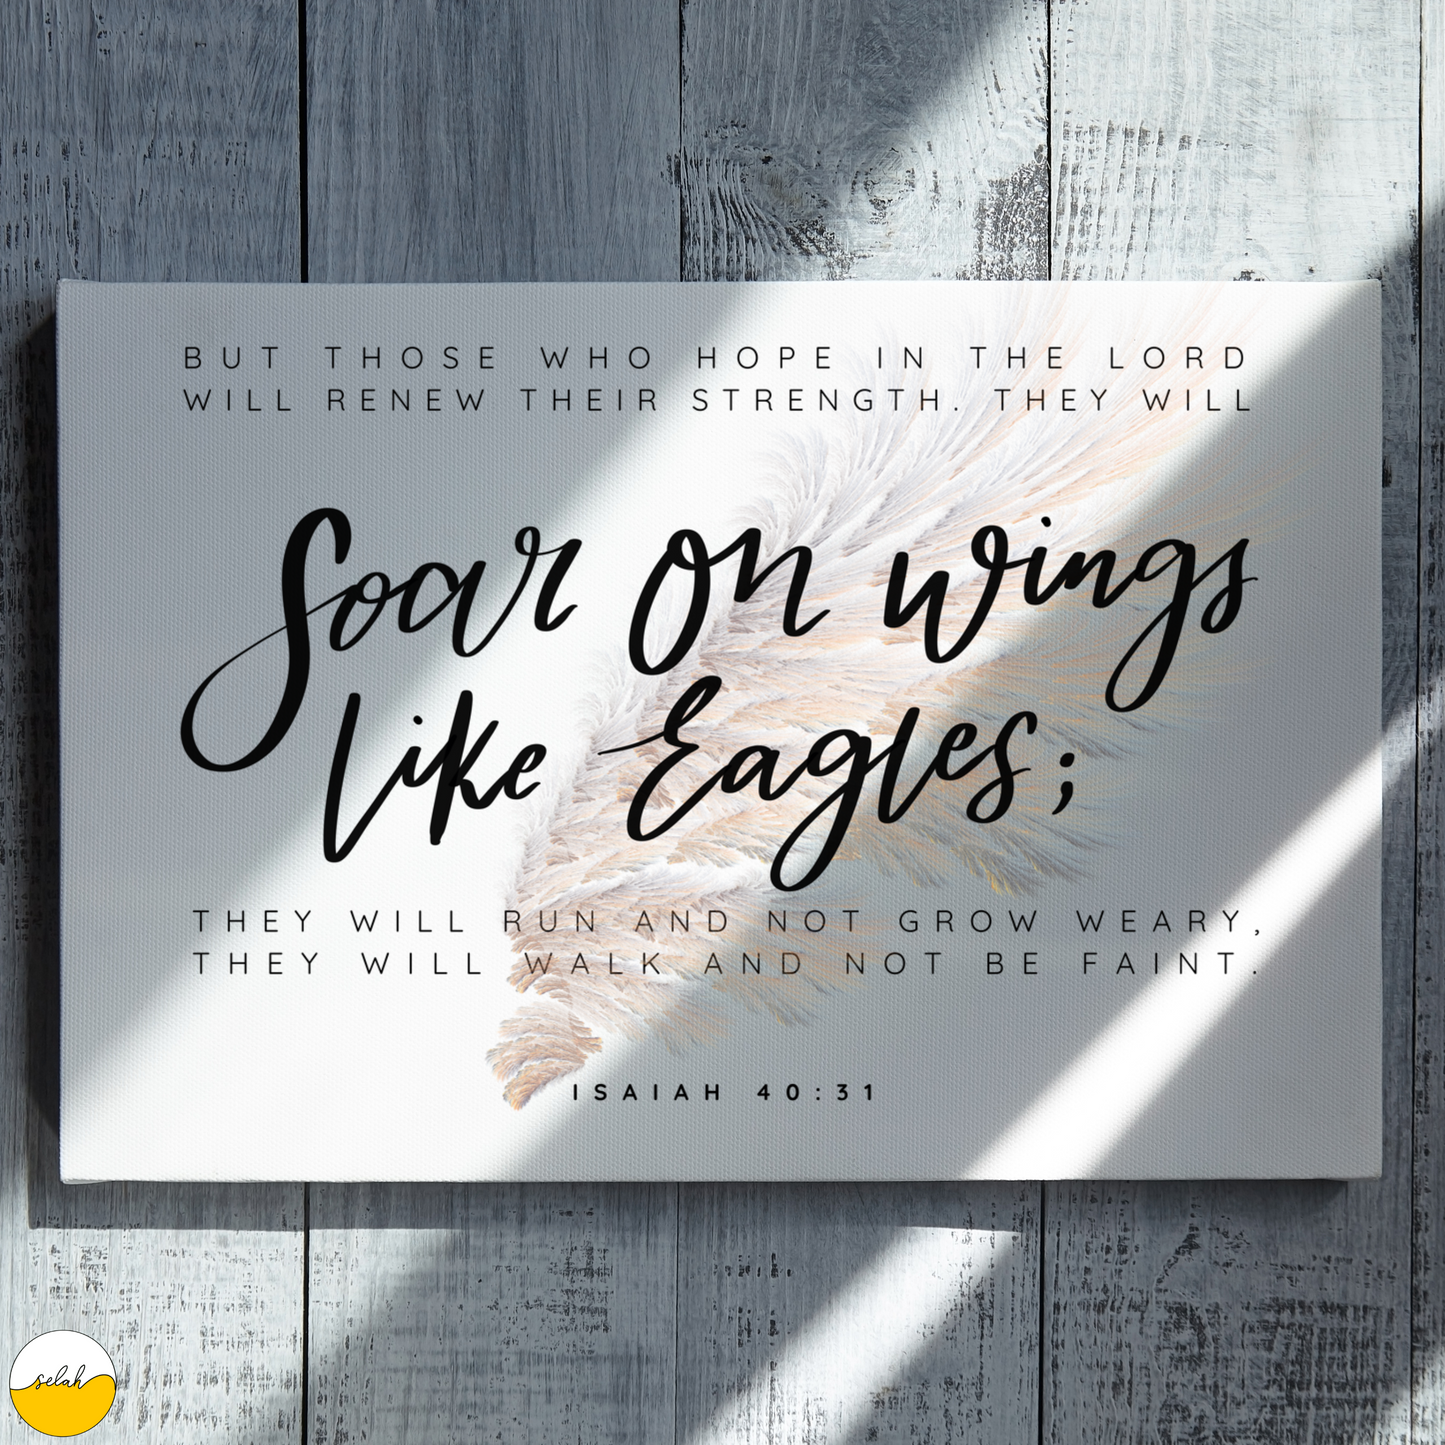 Soar on Wings like Eagles, Isaiah 40:31 Bible Verse Framed Canvas Wall Art